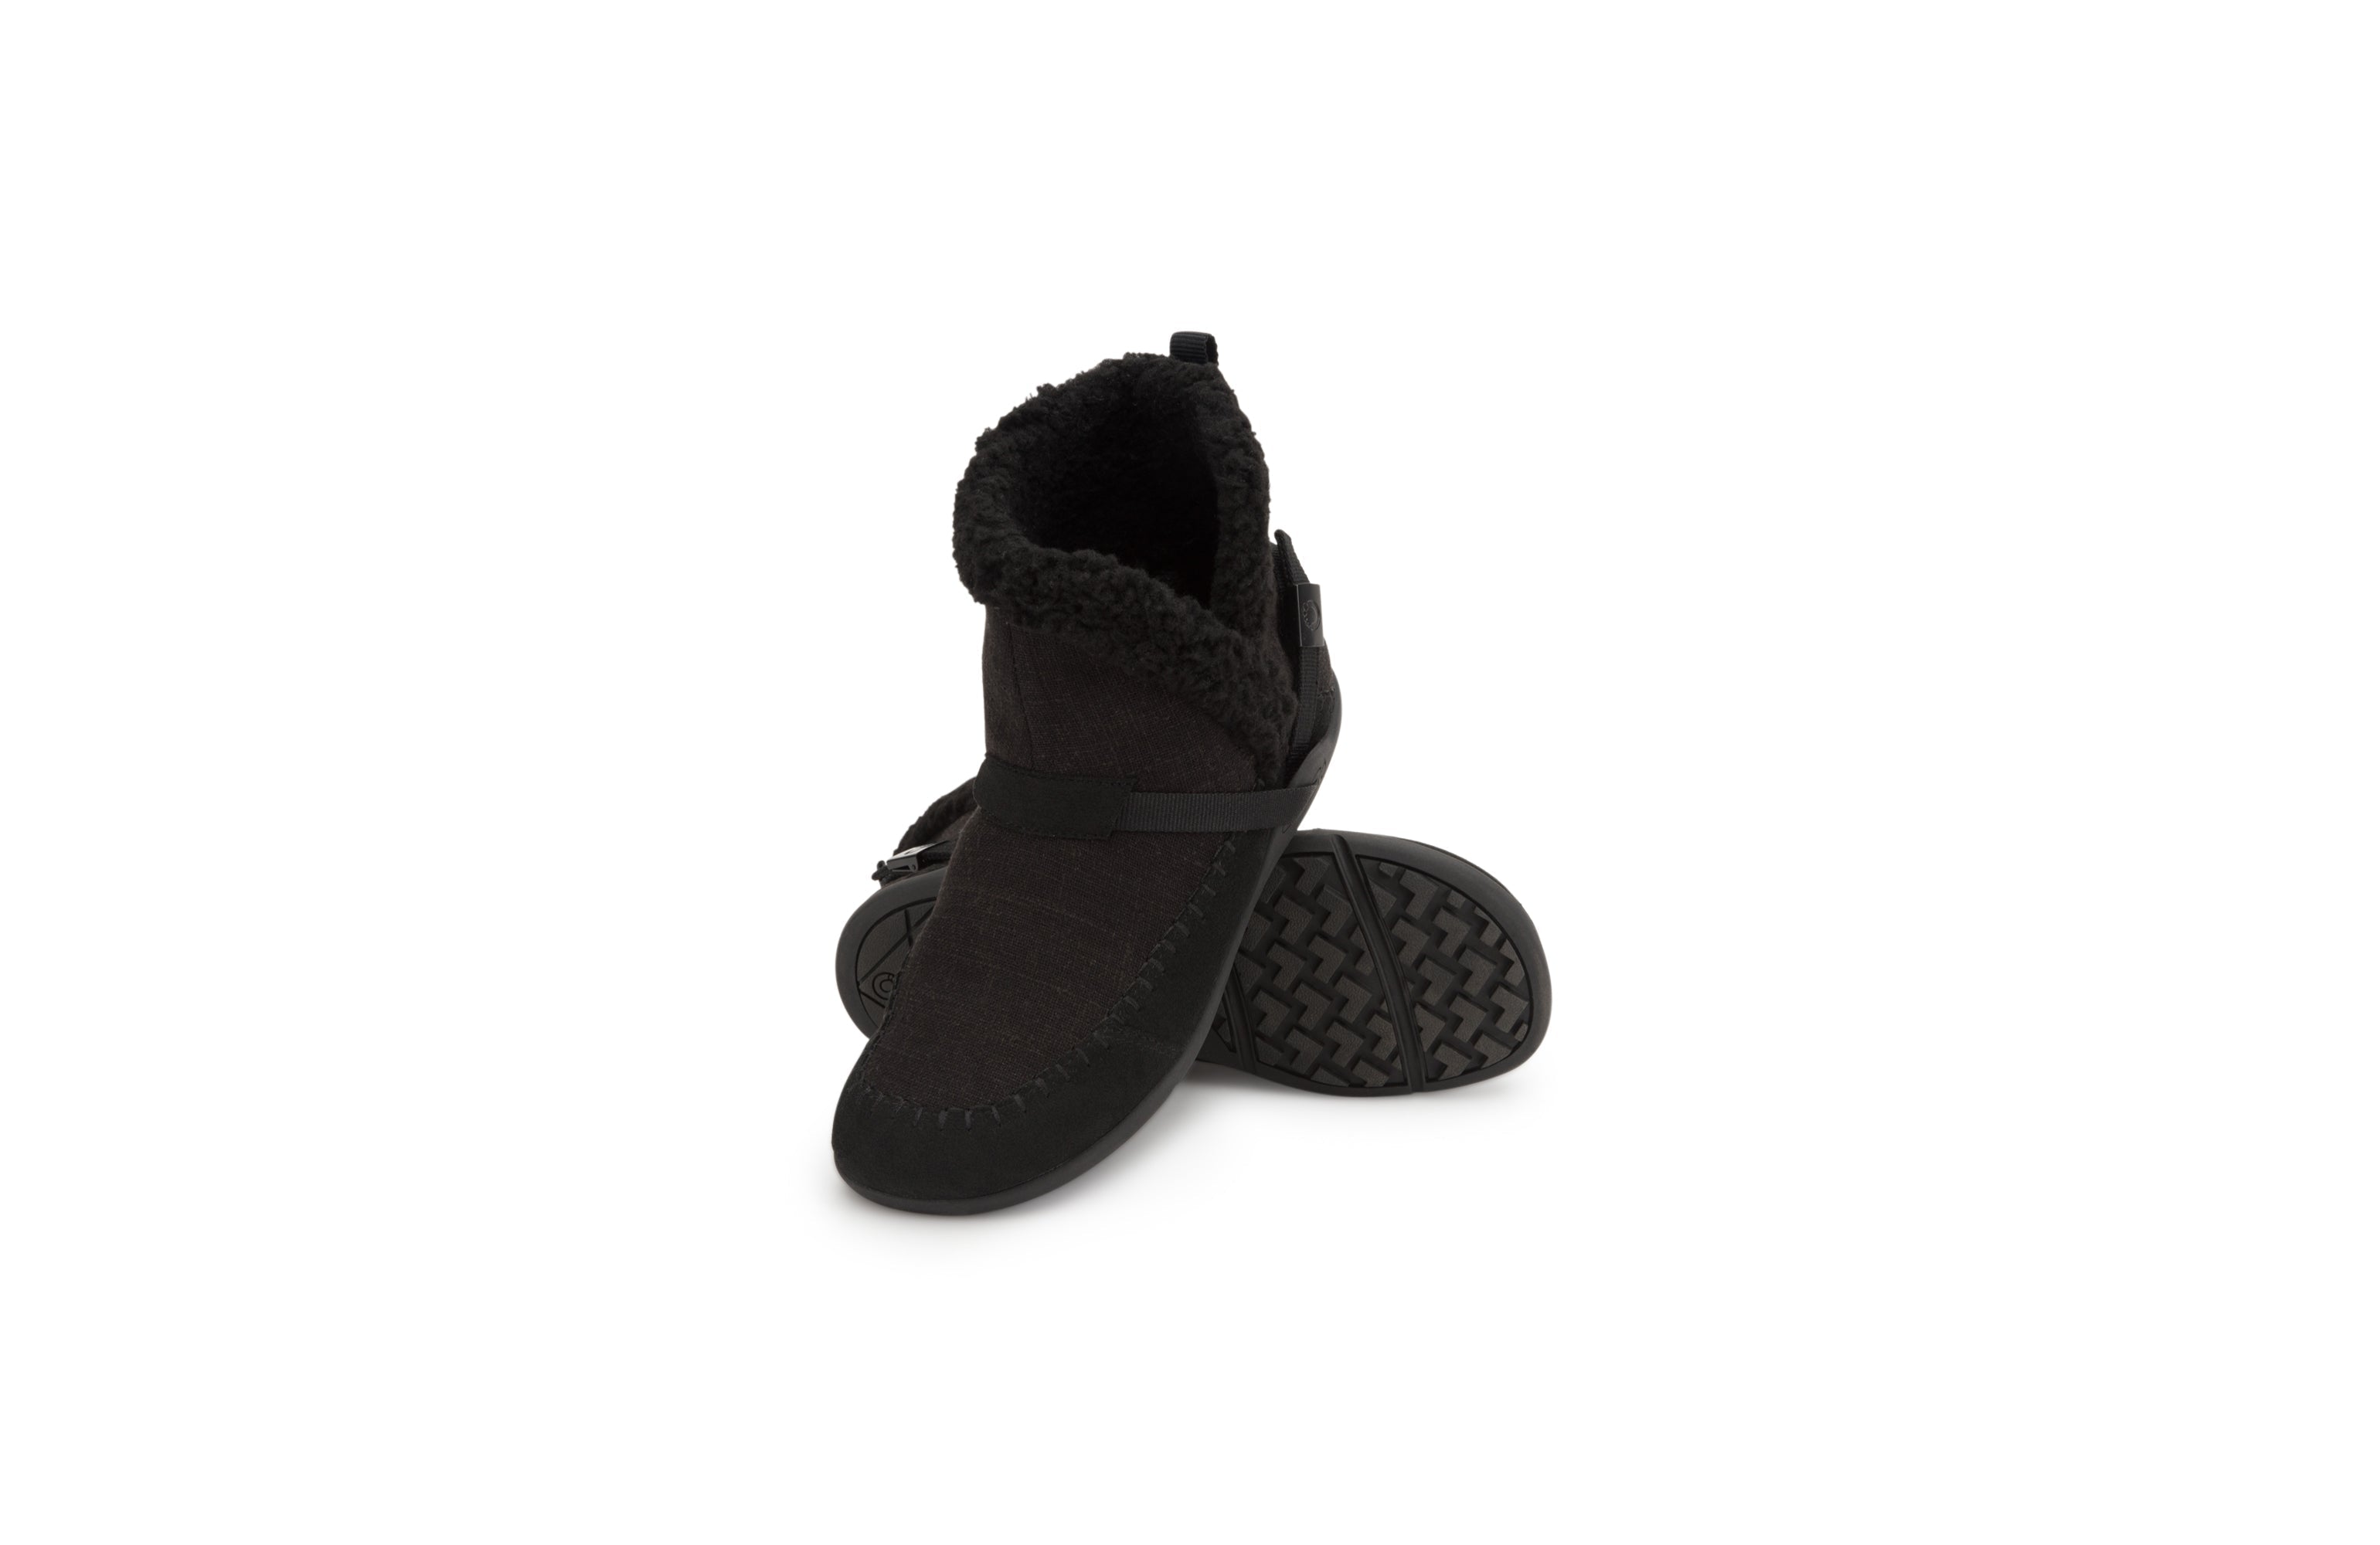 Xero Shoes Ashland barfods kanvas støvler til kvinder i farven black, par